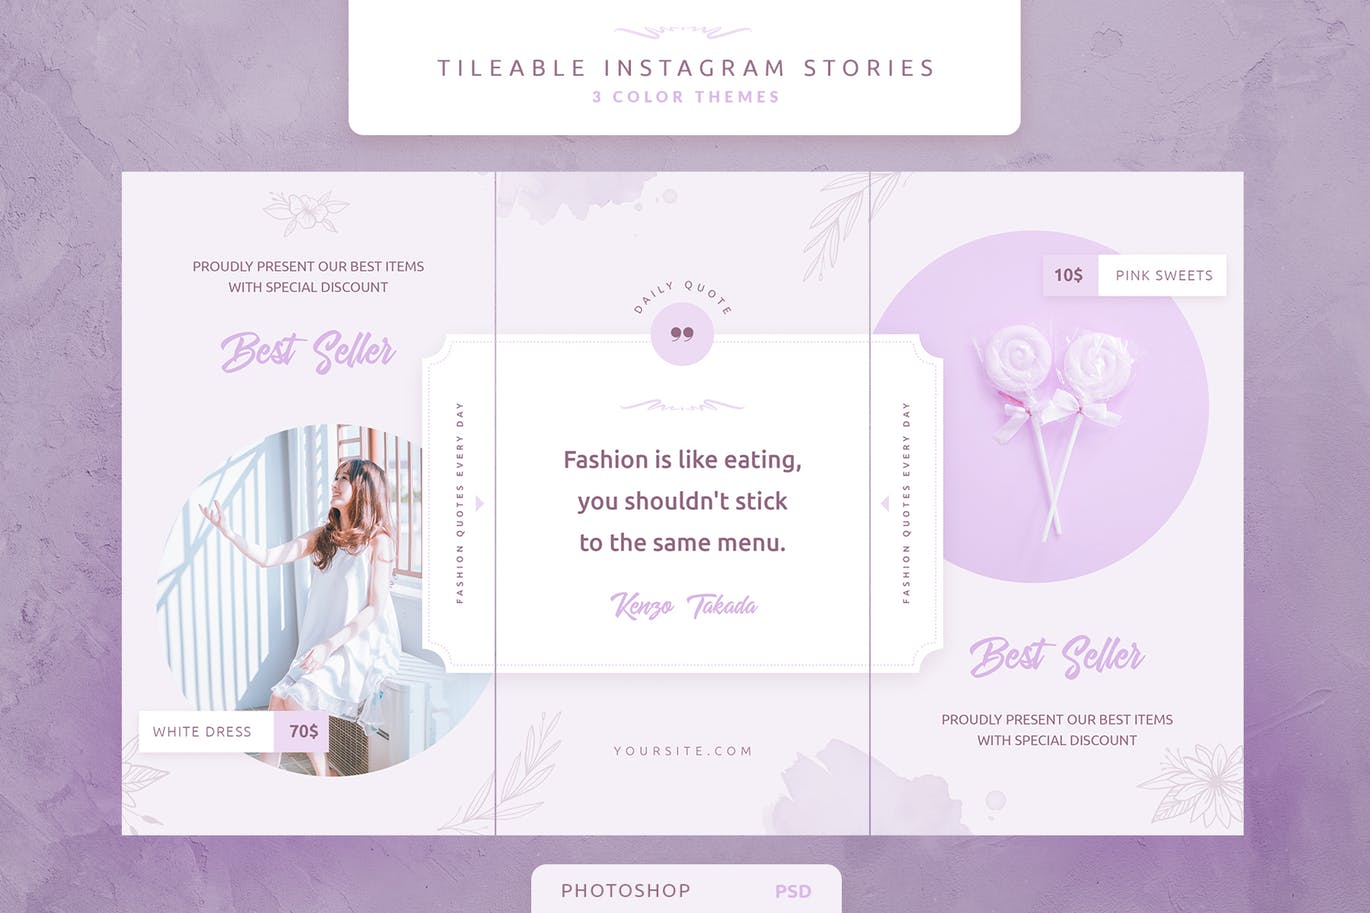 创意三列式Instagram社交品牌故事设计模板素材中国精选 Tileable Instagram Stories插图(2)